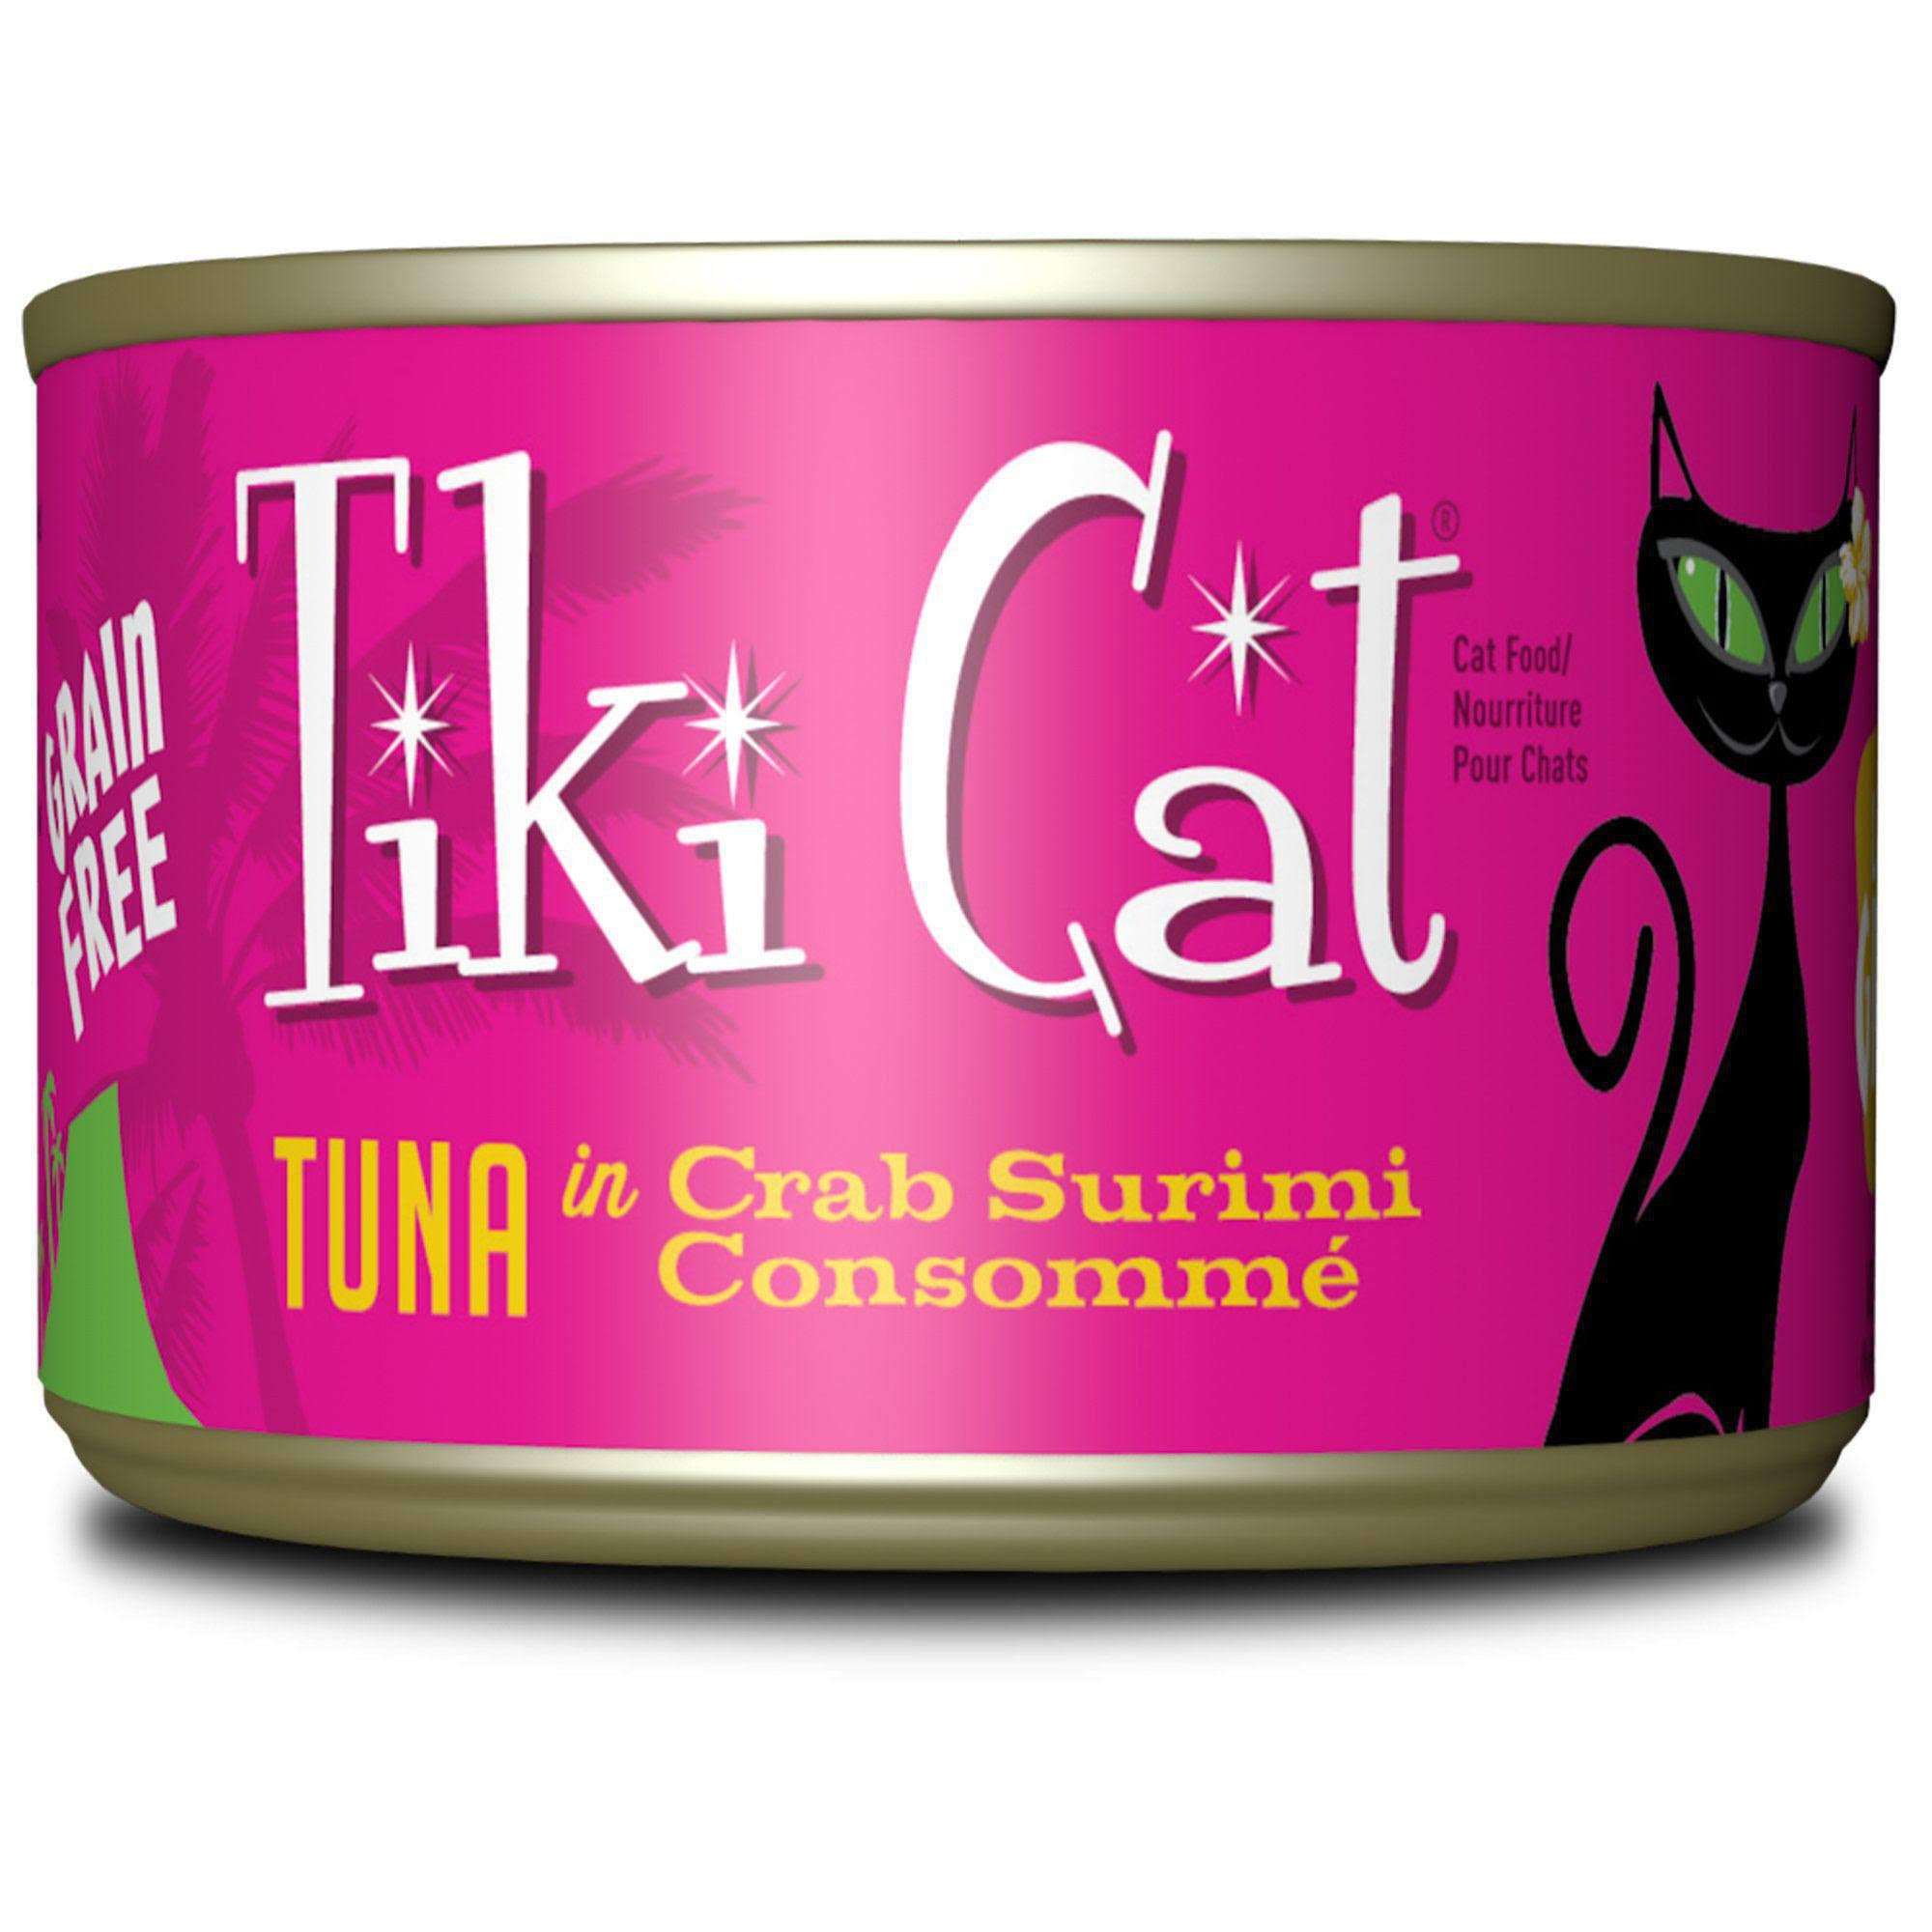 Tiki Cat Lanai Grill - Tuna & Crab Surimi - 6 oz